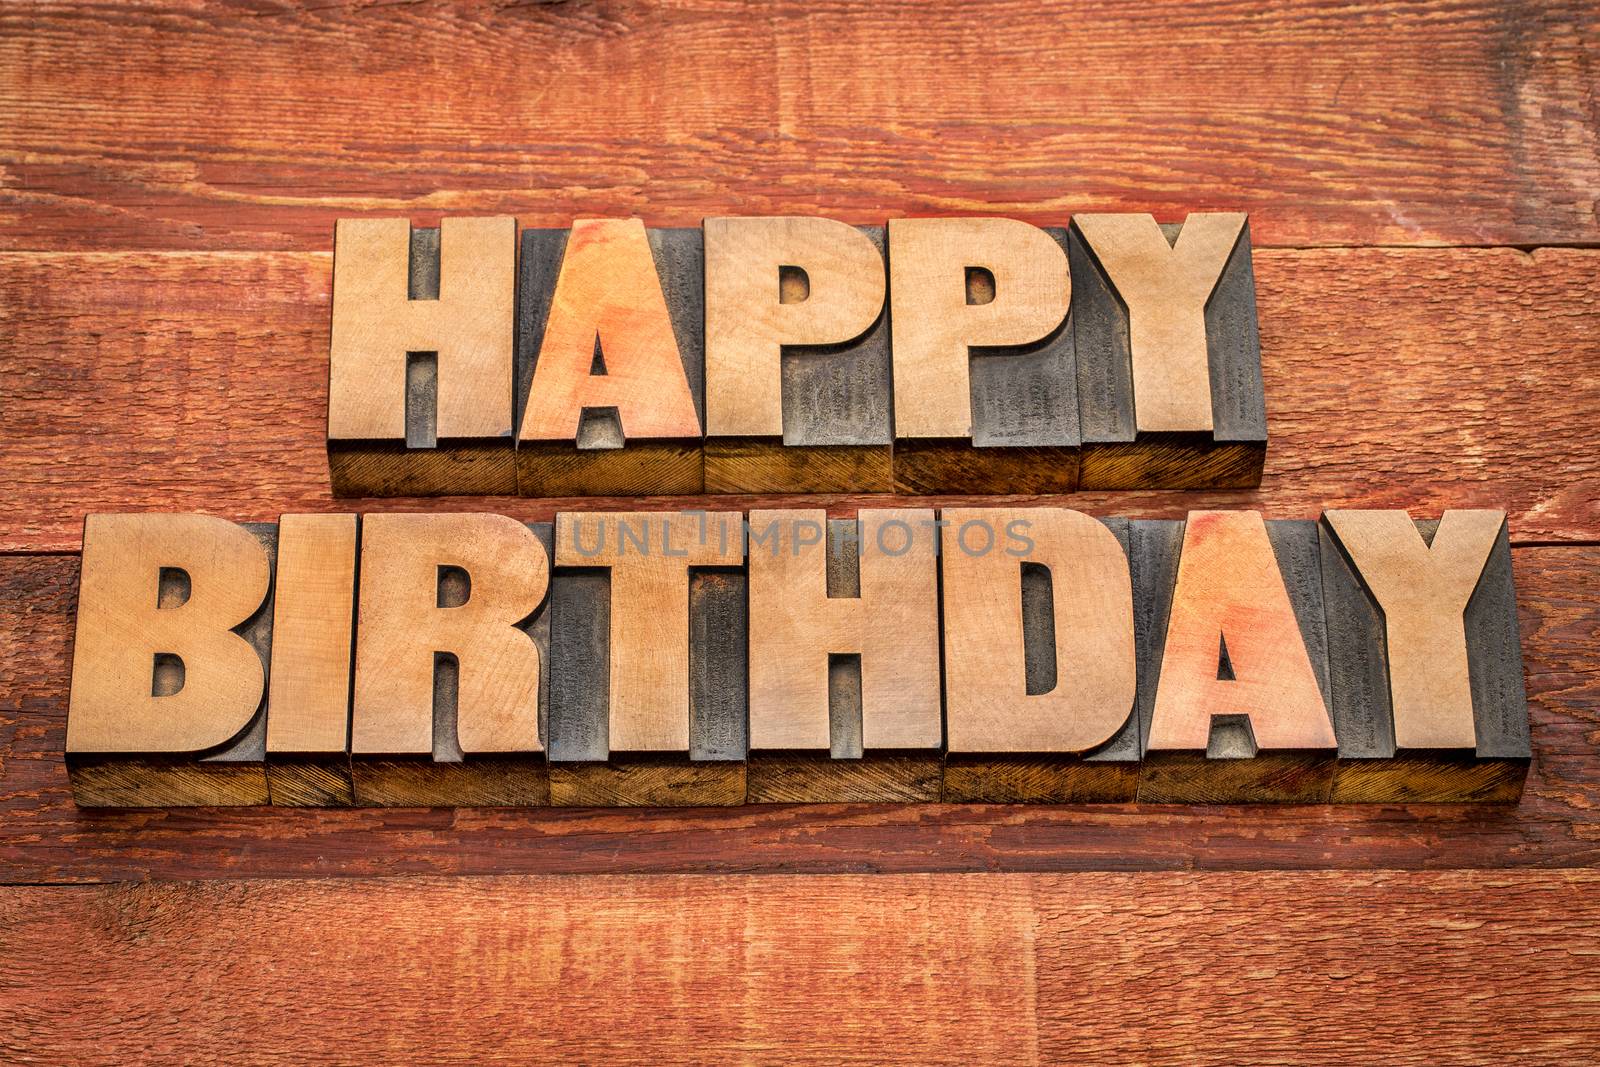 Happy Birthday greetings in letterpress wood type against rustic, red painted barn wood